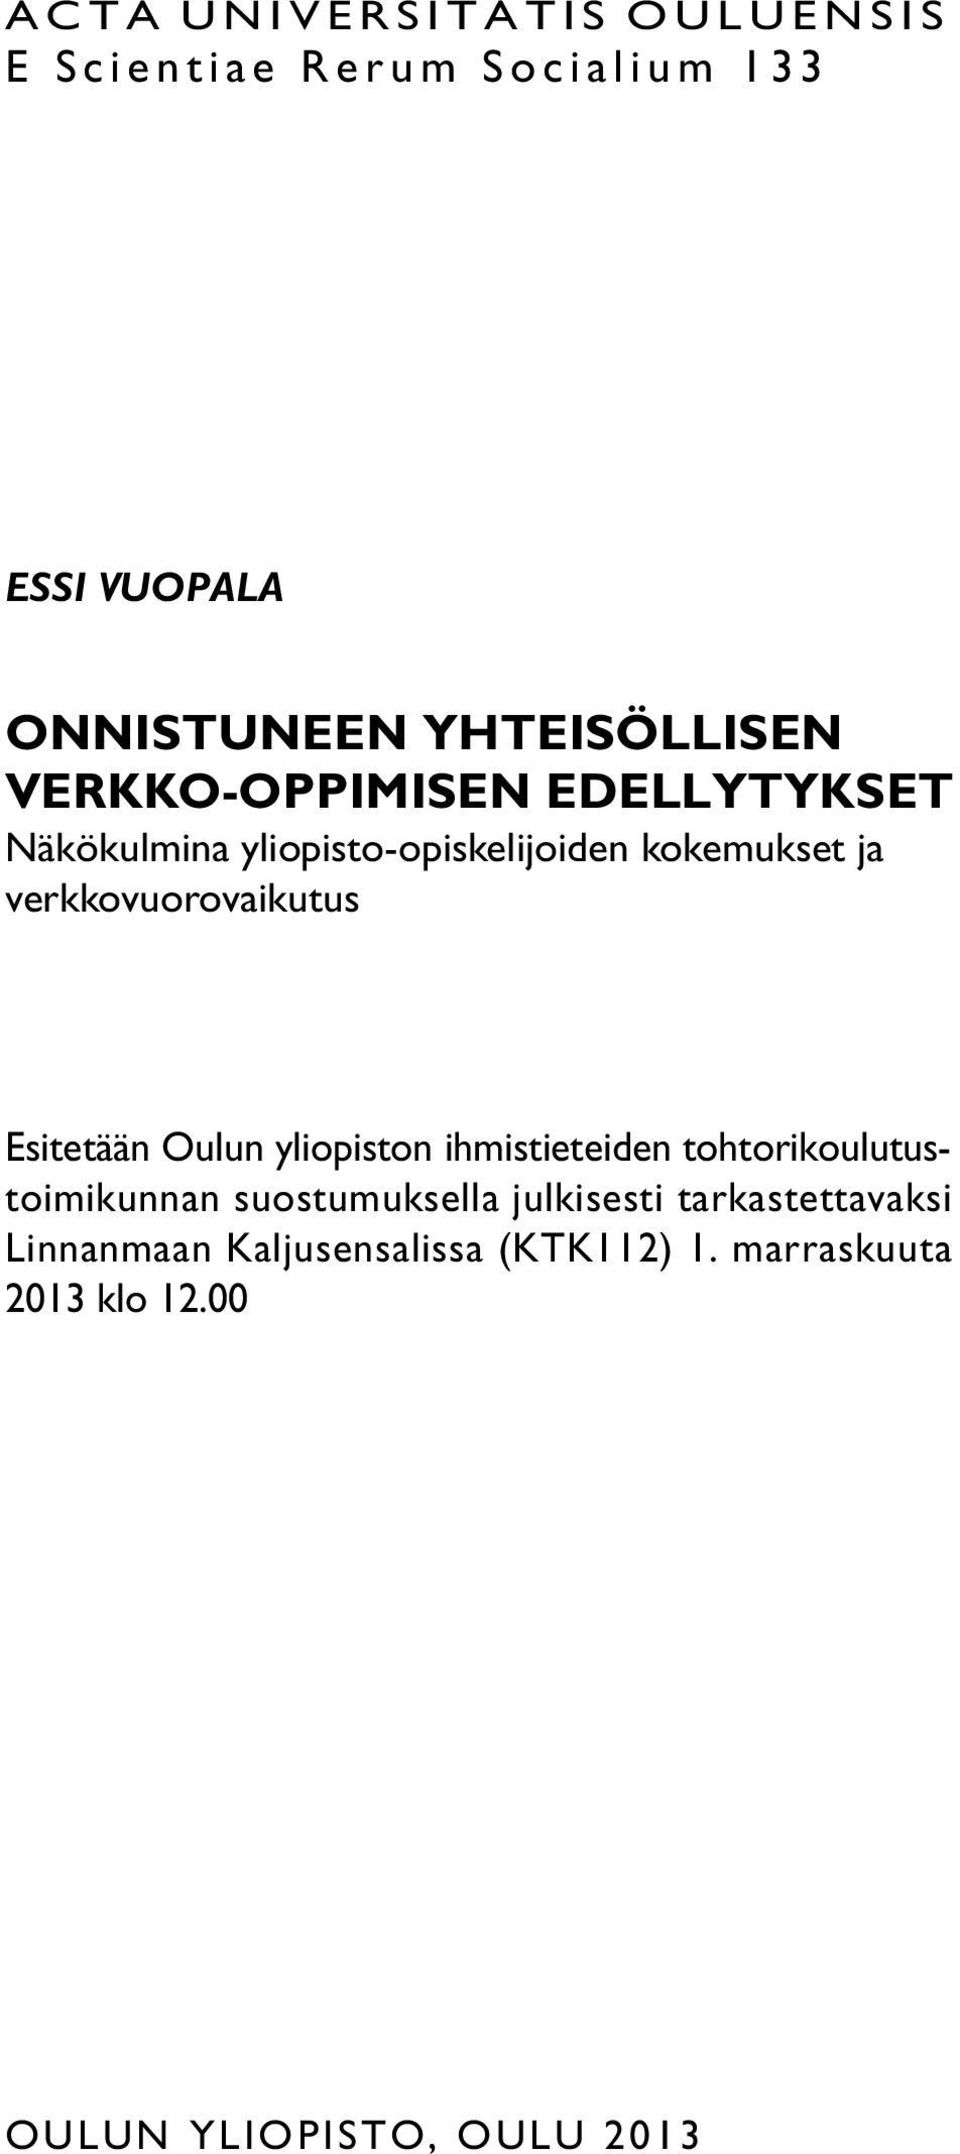 Esitetään Oulun yliopiston ihmistieteiden tohtorikoulutustoimikunnan suostumuksella julkisesti